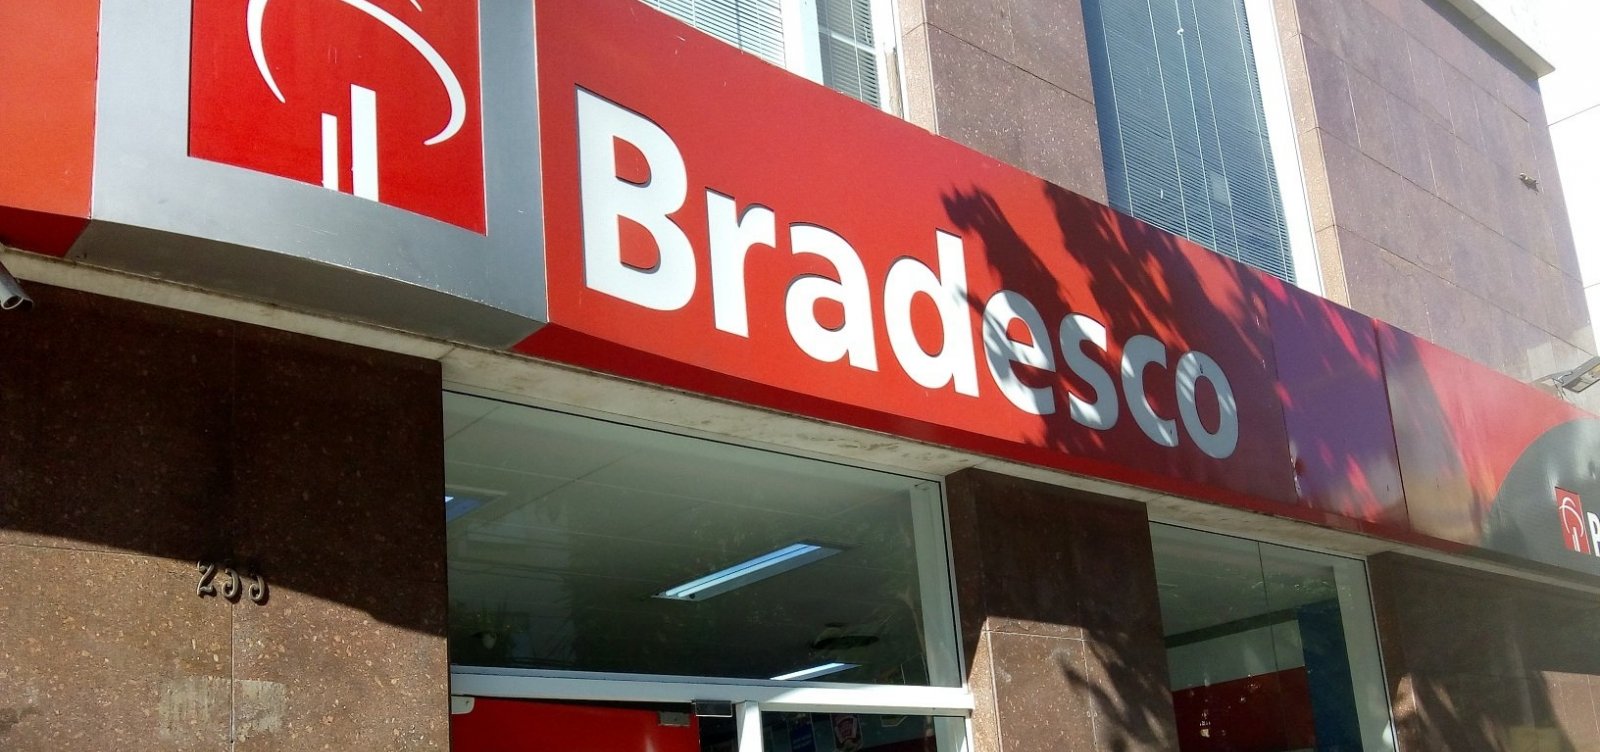 Mesmo com lucro, Bradesco demite mais de 200 funcionários baianos durante pandemia da Covid-19 